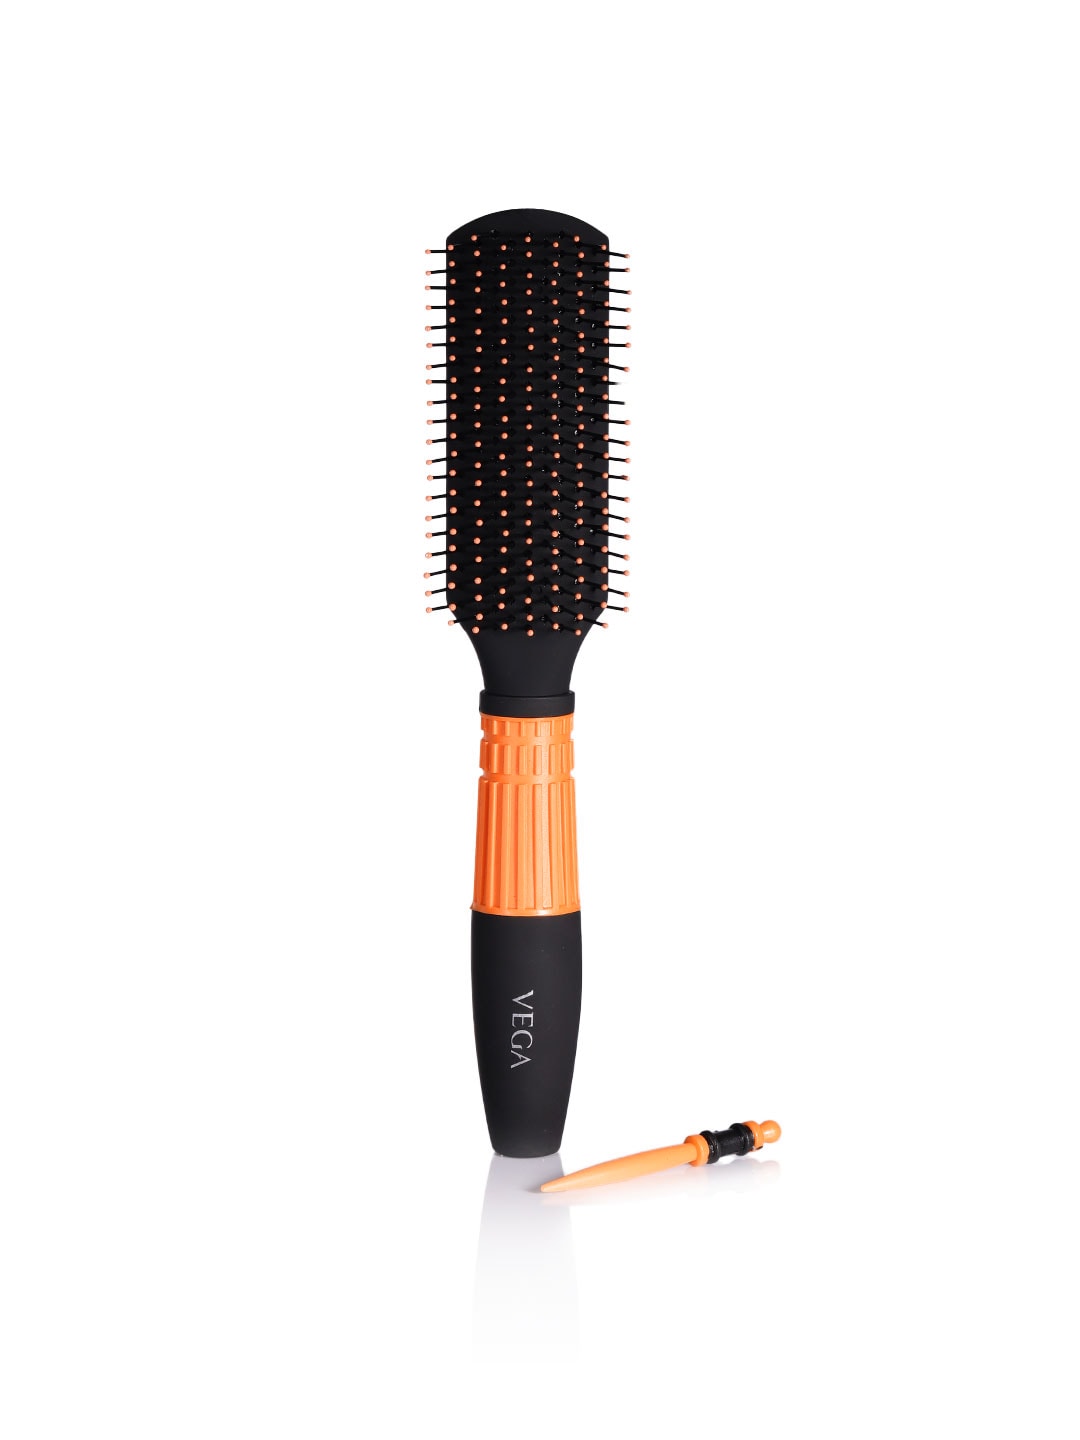 VEGA Unisex Black & Orange Flat Vent Hair Brush Price in India